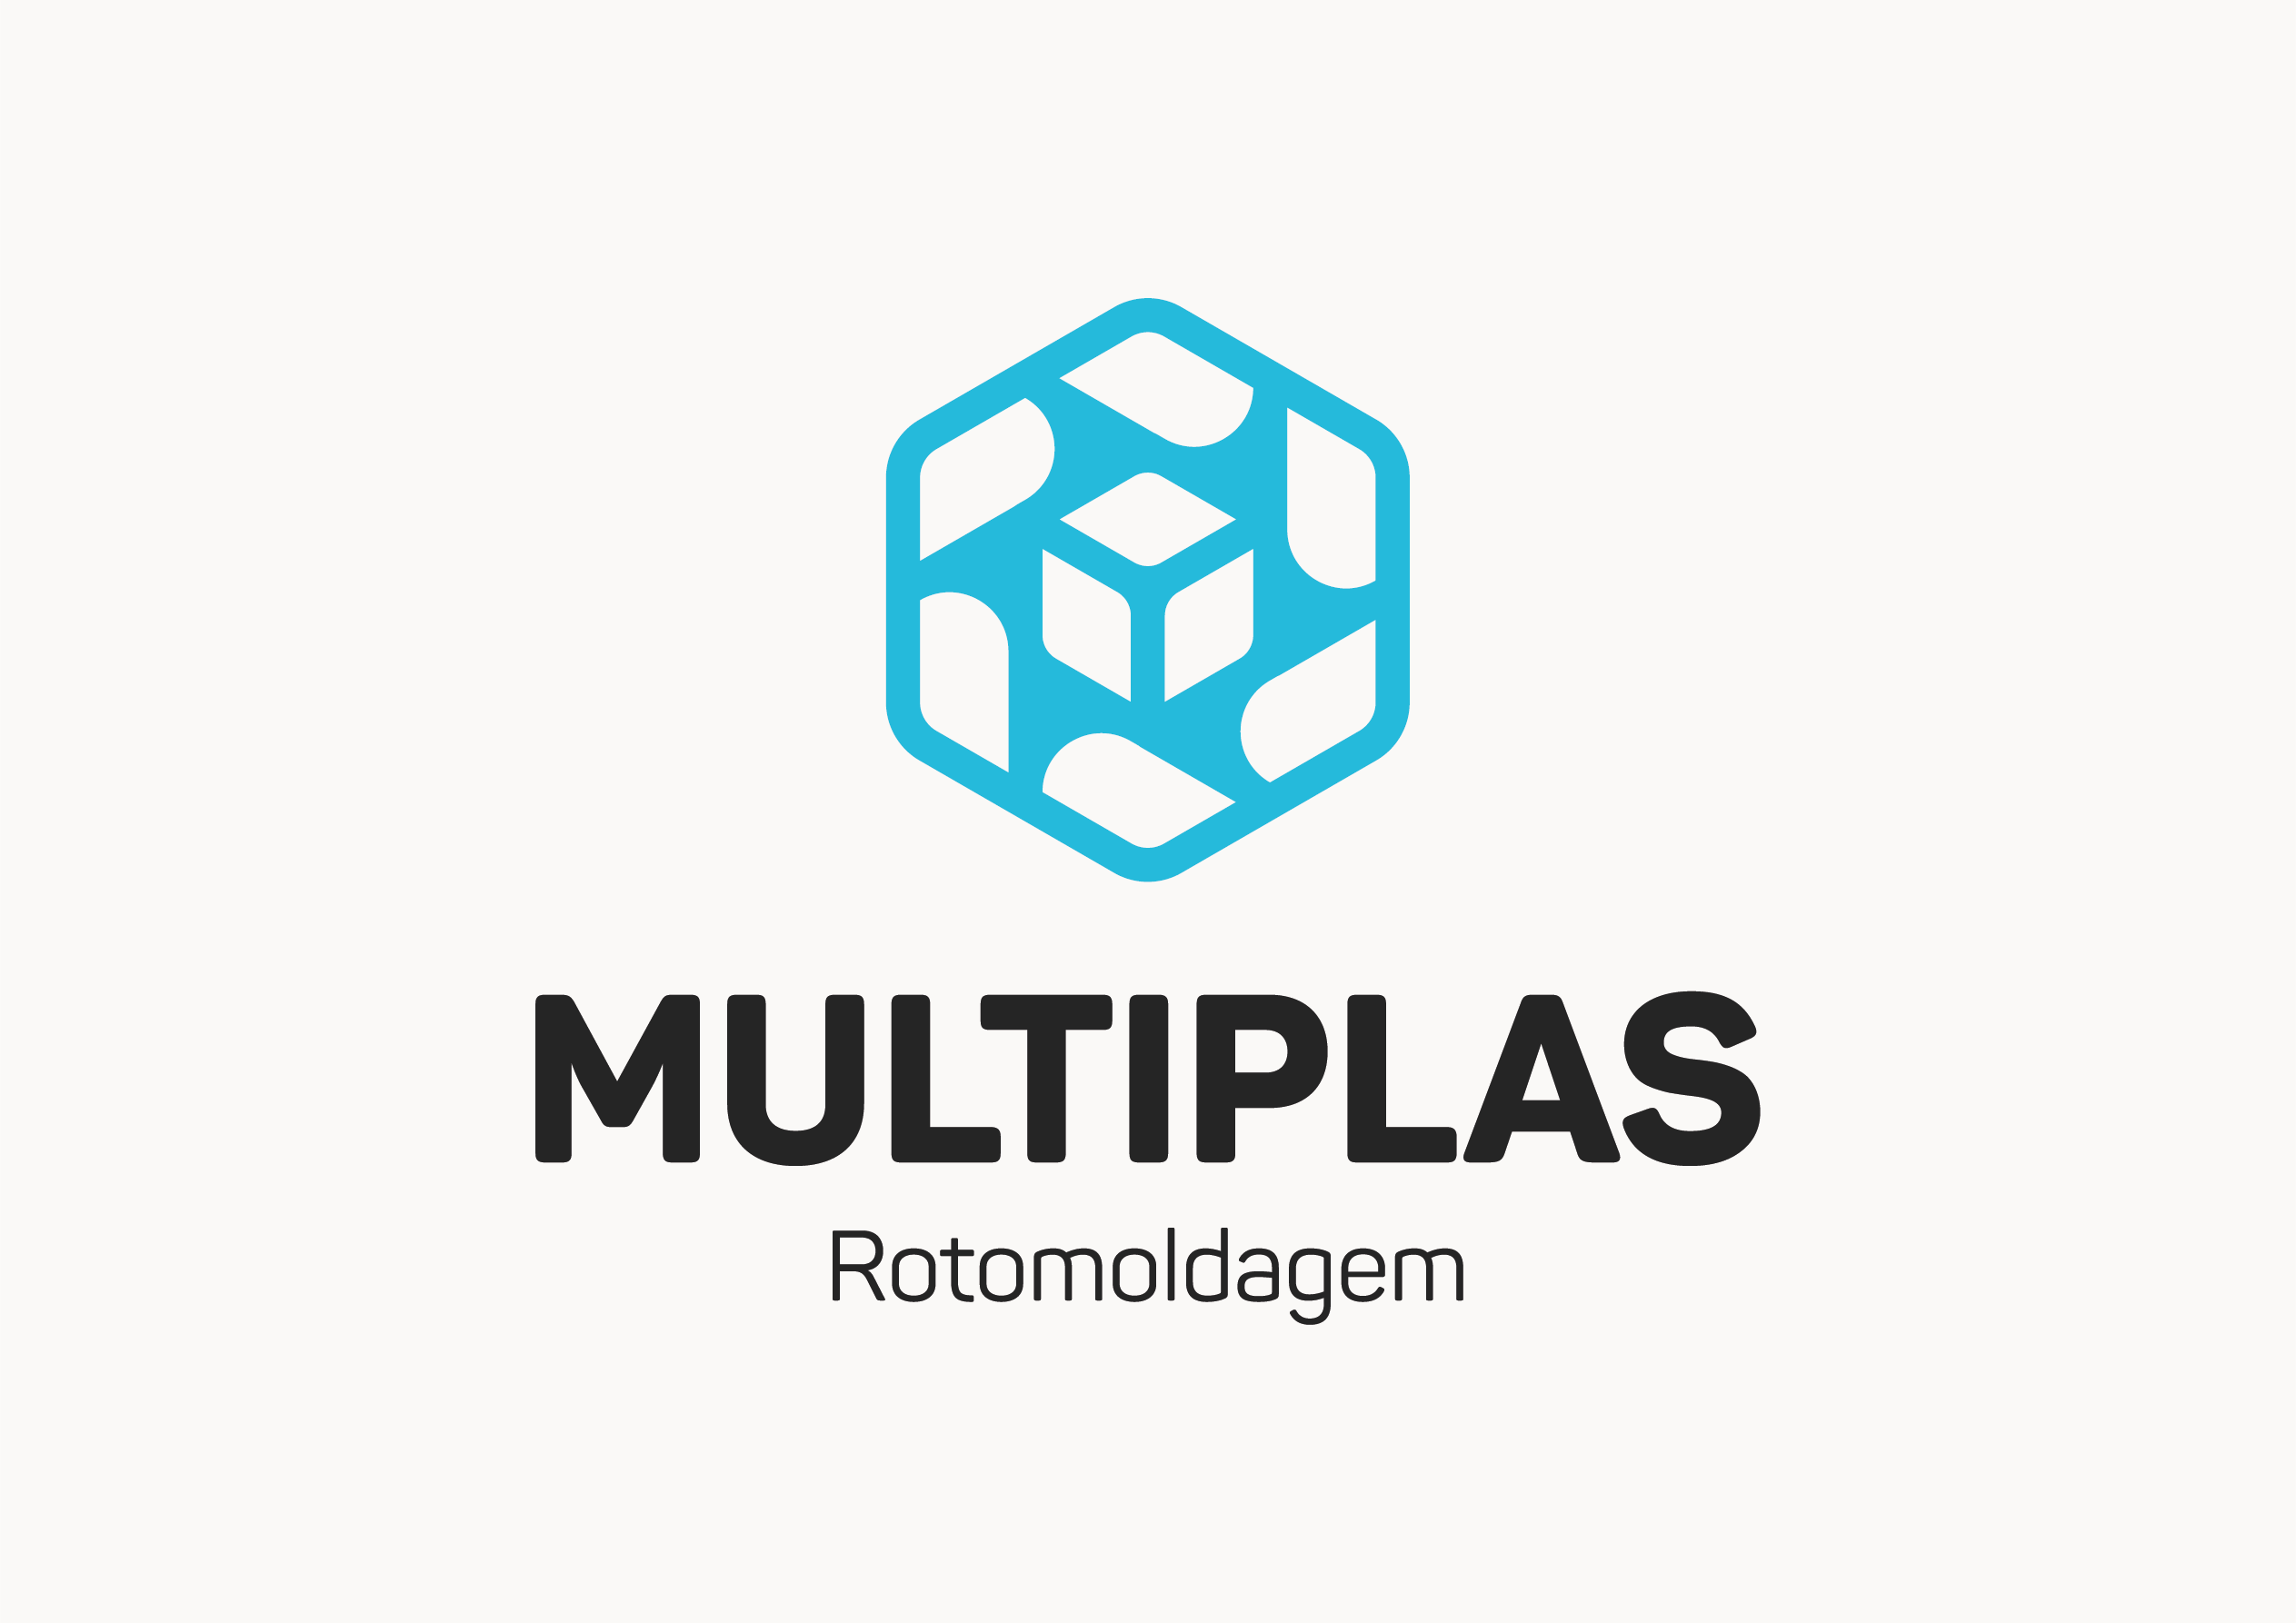 Multiplas Rotomoldagem - Indústria de plásticos Rotomoldados